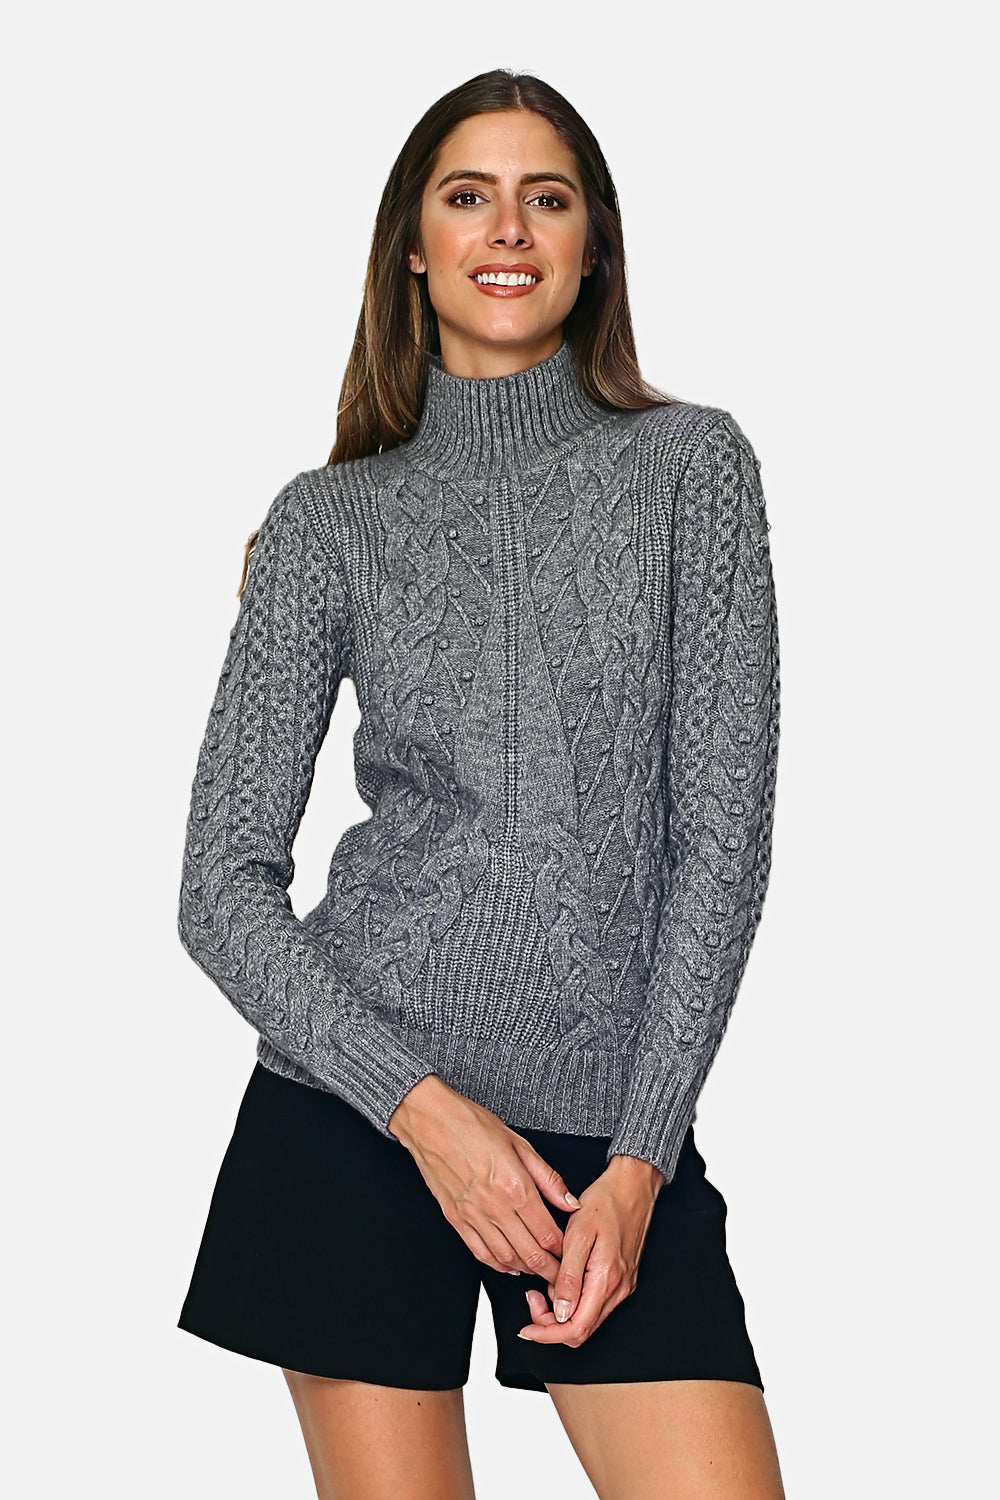 Sweater High neck fancy knit